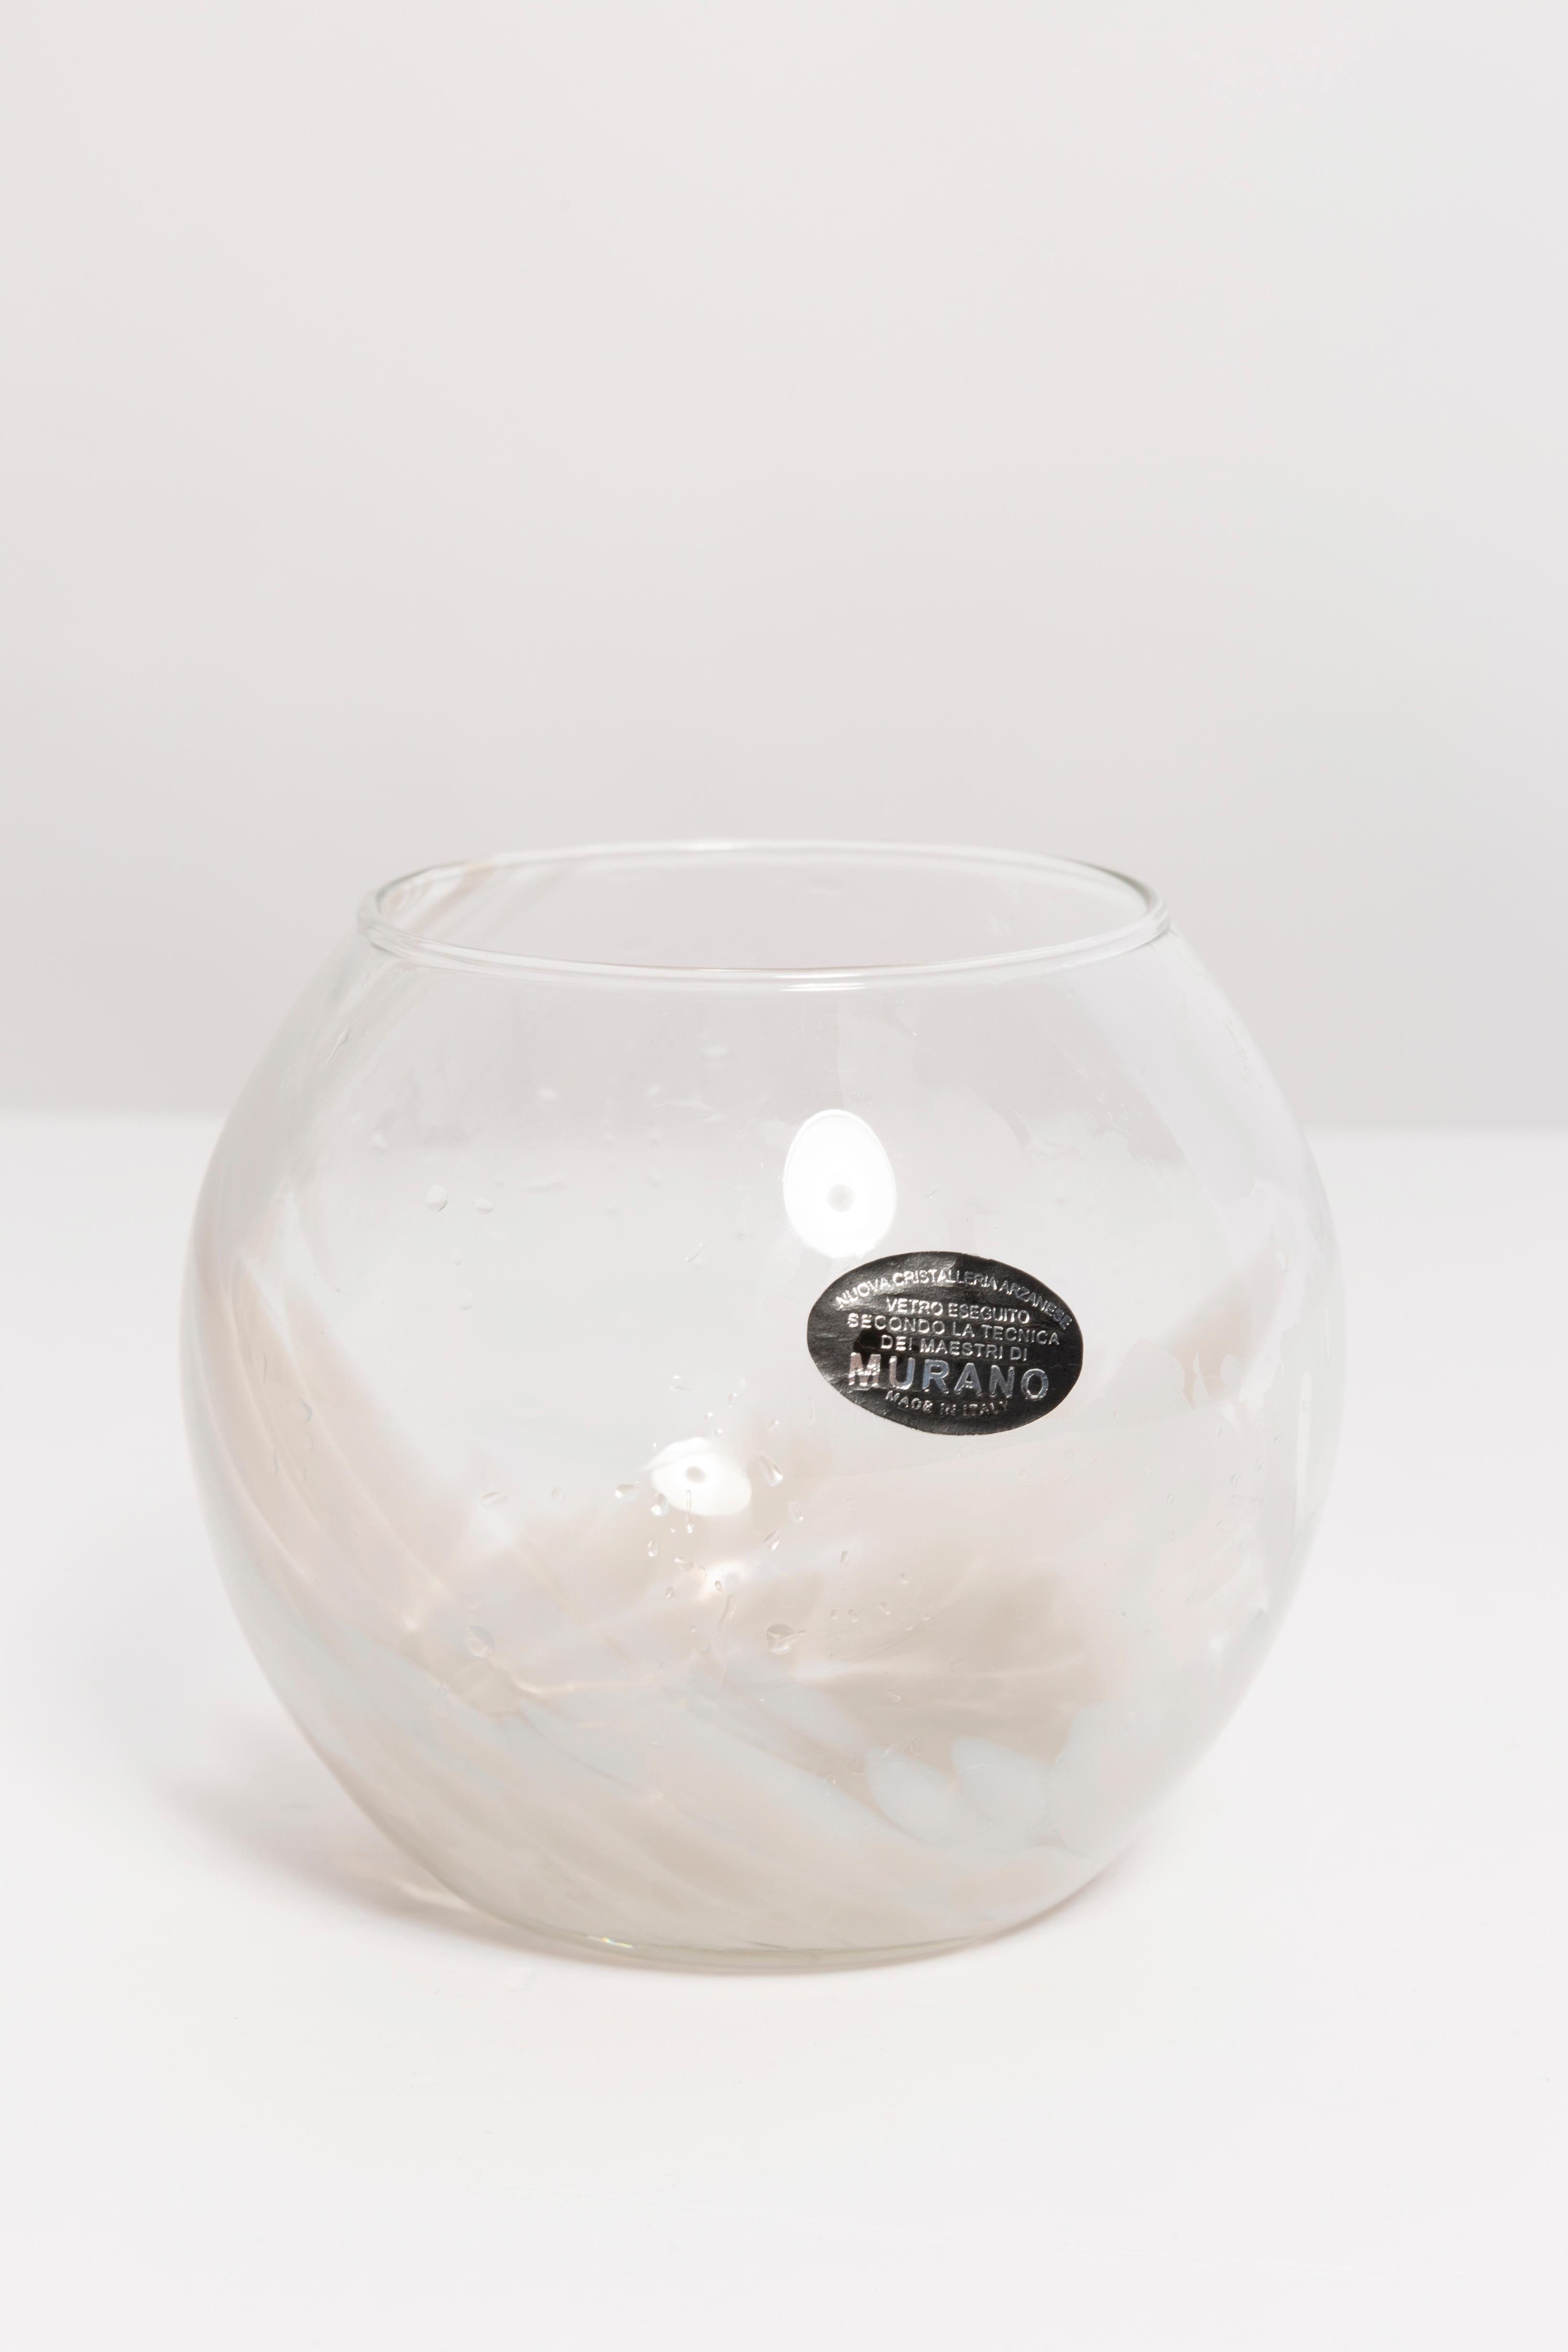 Dekorative Vase aus weißem und beigem Muranoglas aus Italien. Vase ist in sehr gutem Vintage-Zustand, keine Schäden oder Risse. Original Glas. Ein schönes Stück für jedes Interieur! Nur ein einziges Stück.